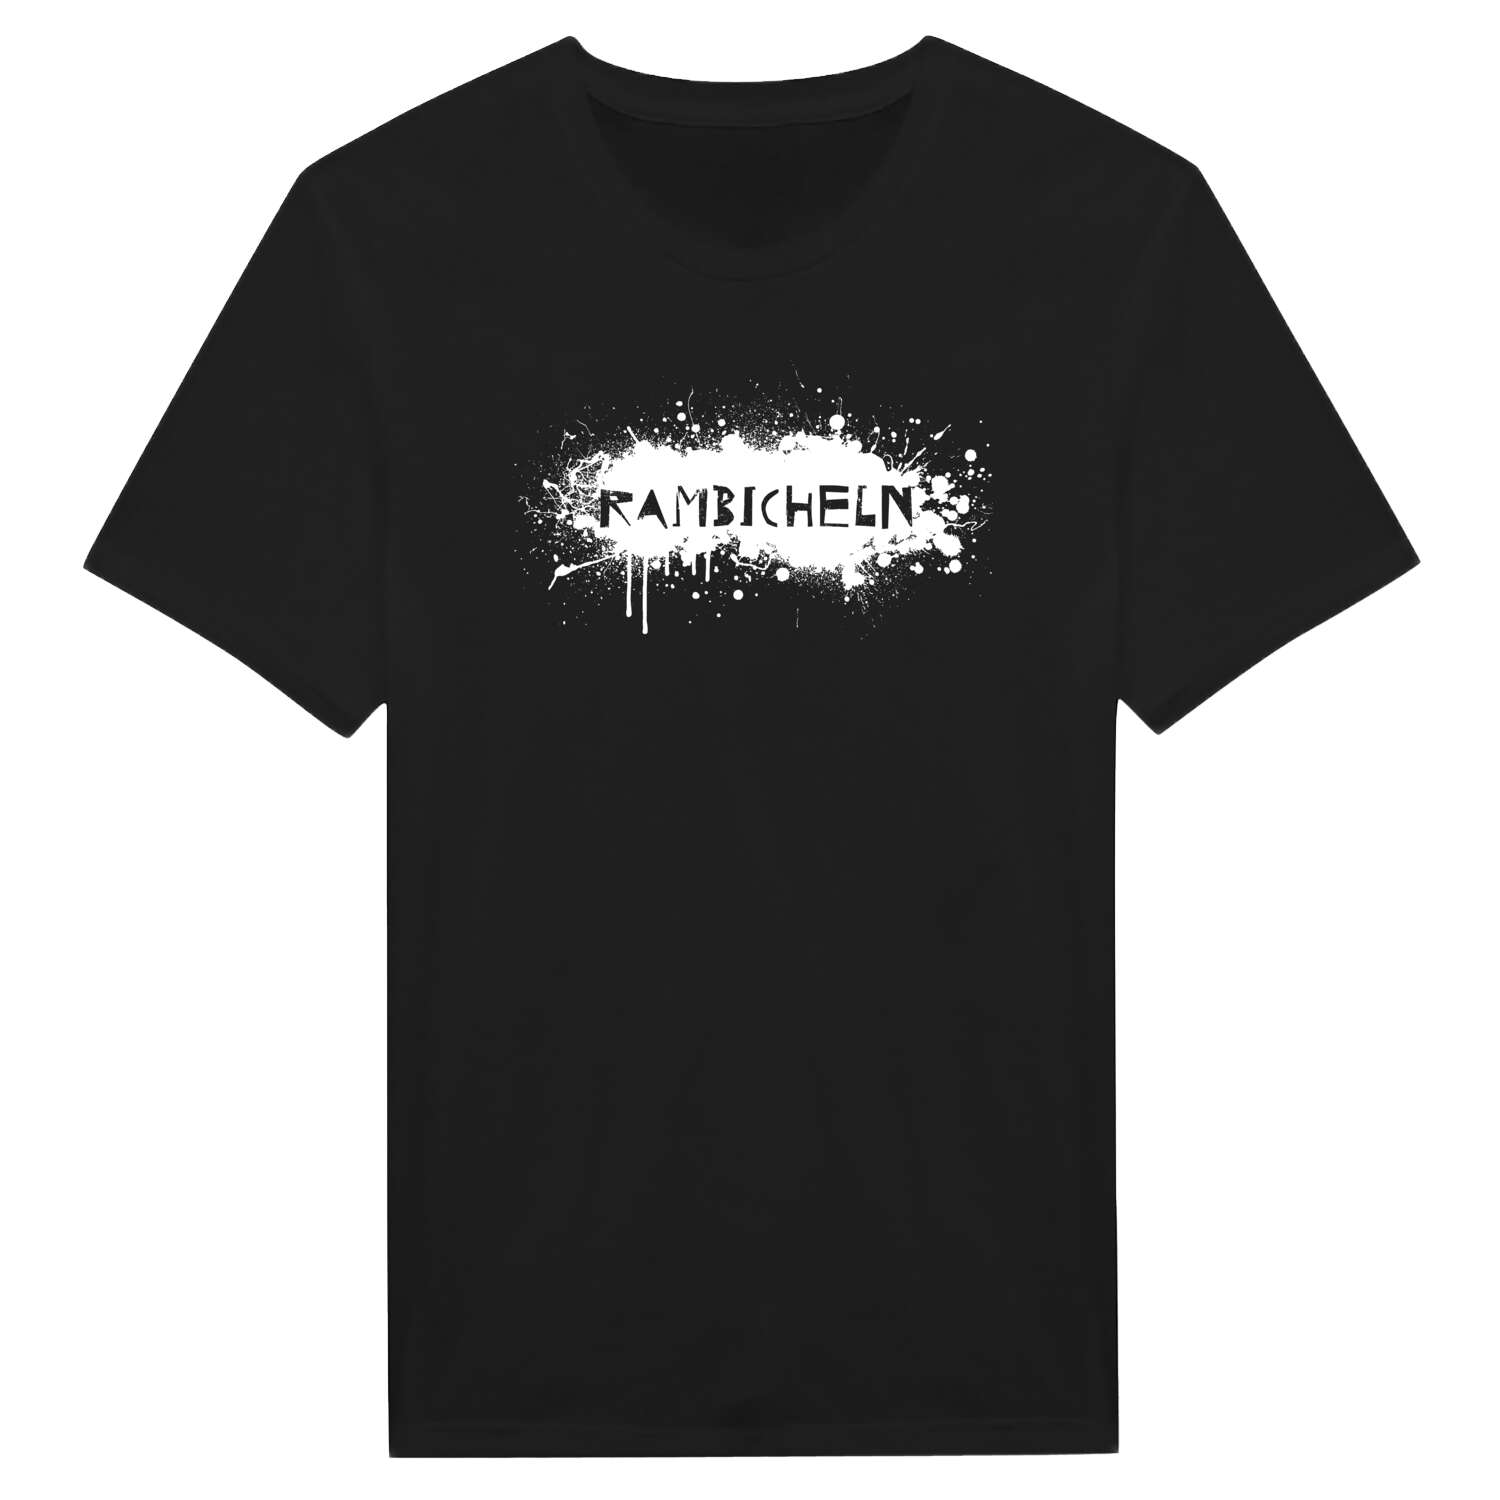 Rambicheln T-Shirt »Paint Splash Punk«